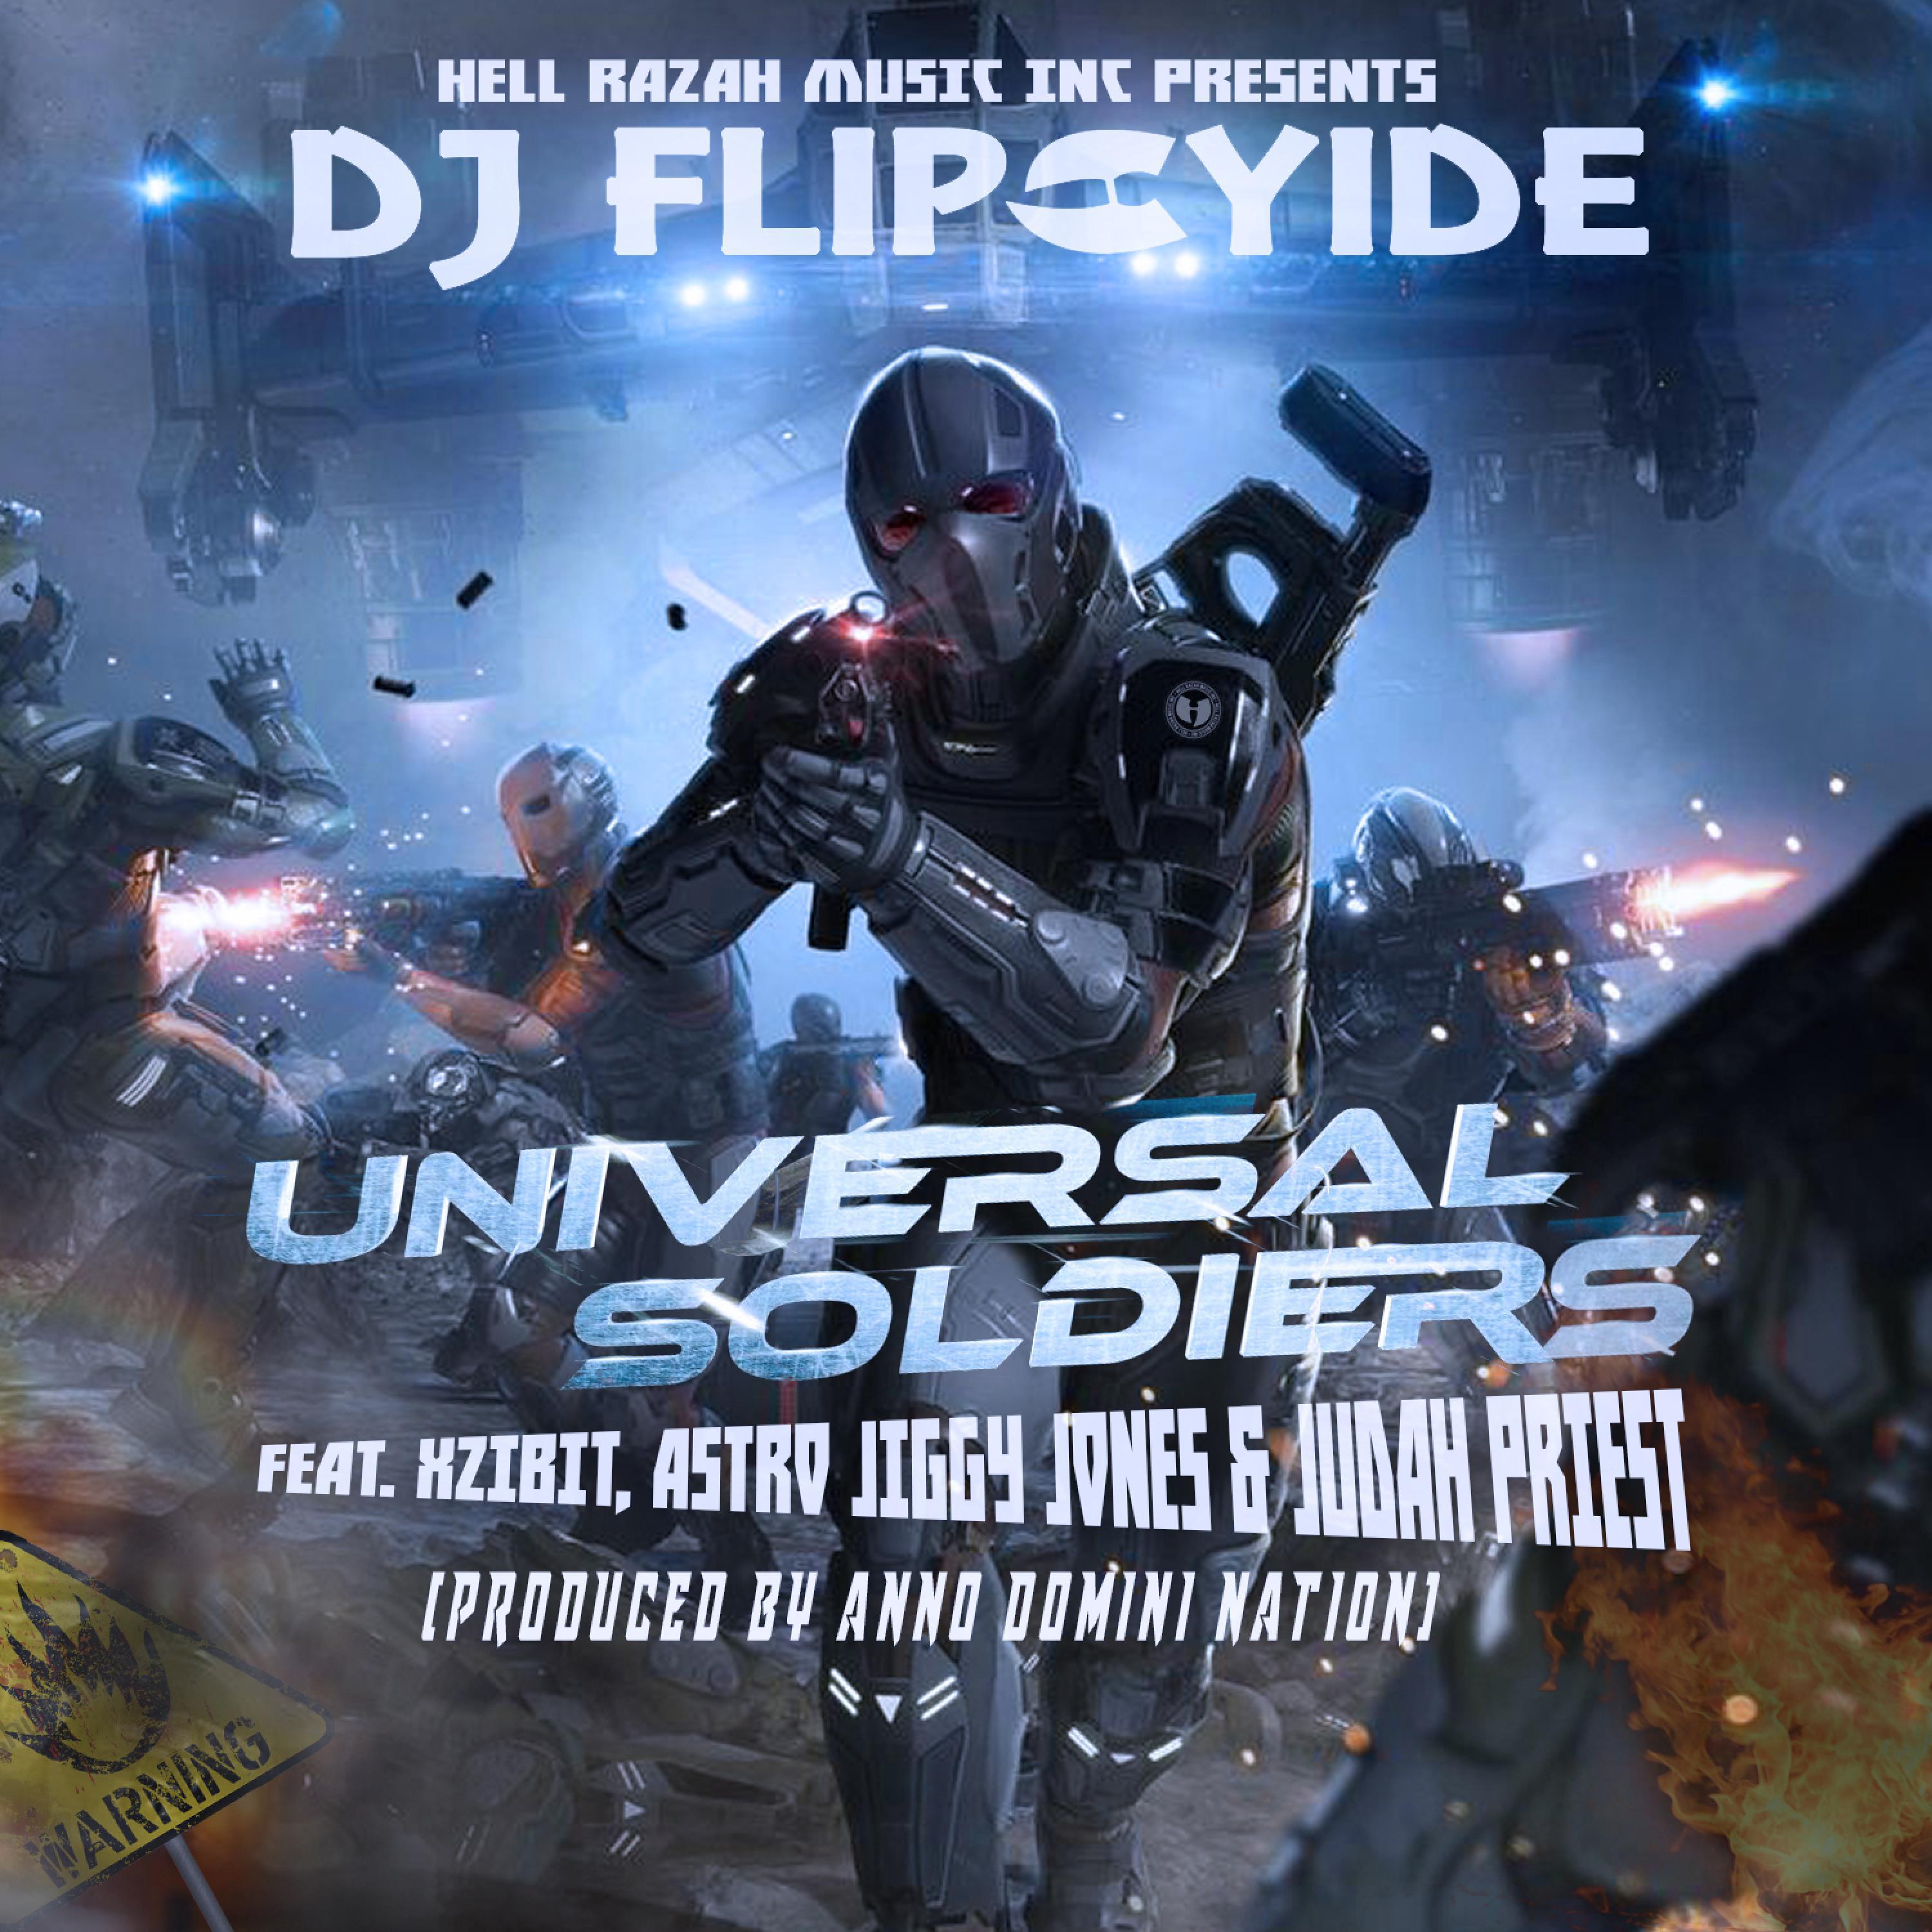 Dj Flipcyide - Universal Soldiers (feat. Xzibit, Astro Jiggy Jones & Judah Priest)